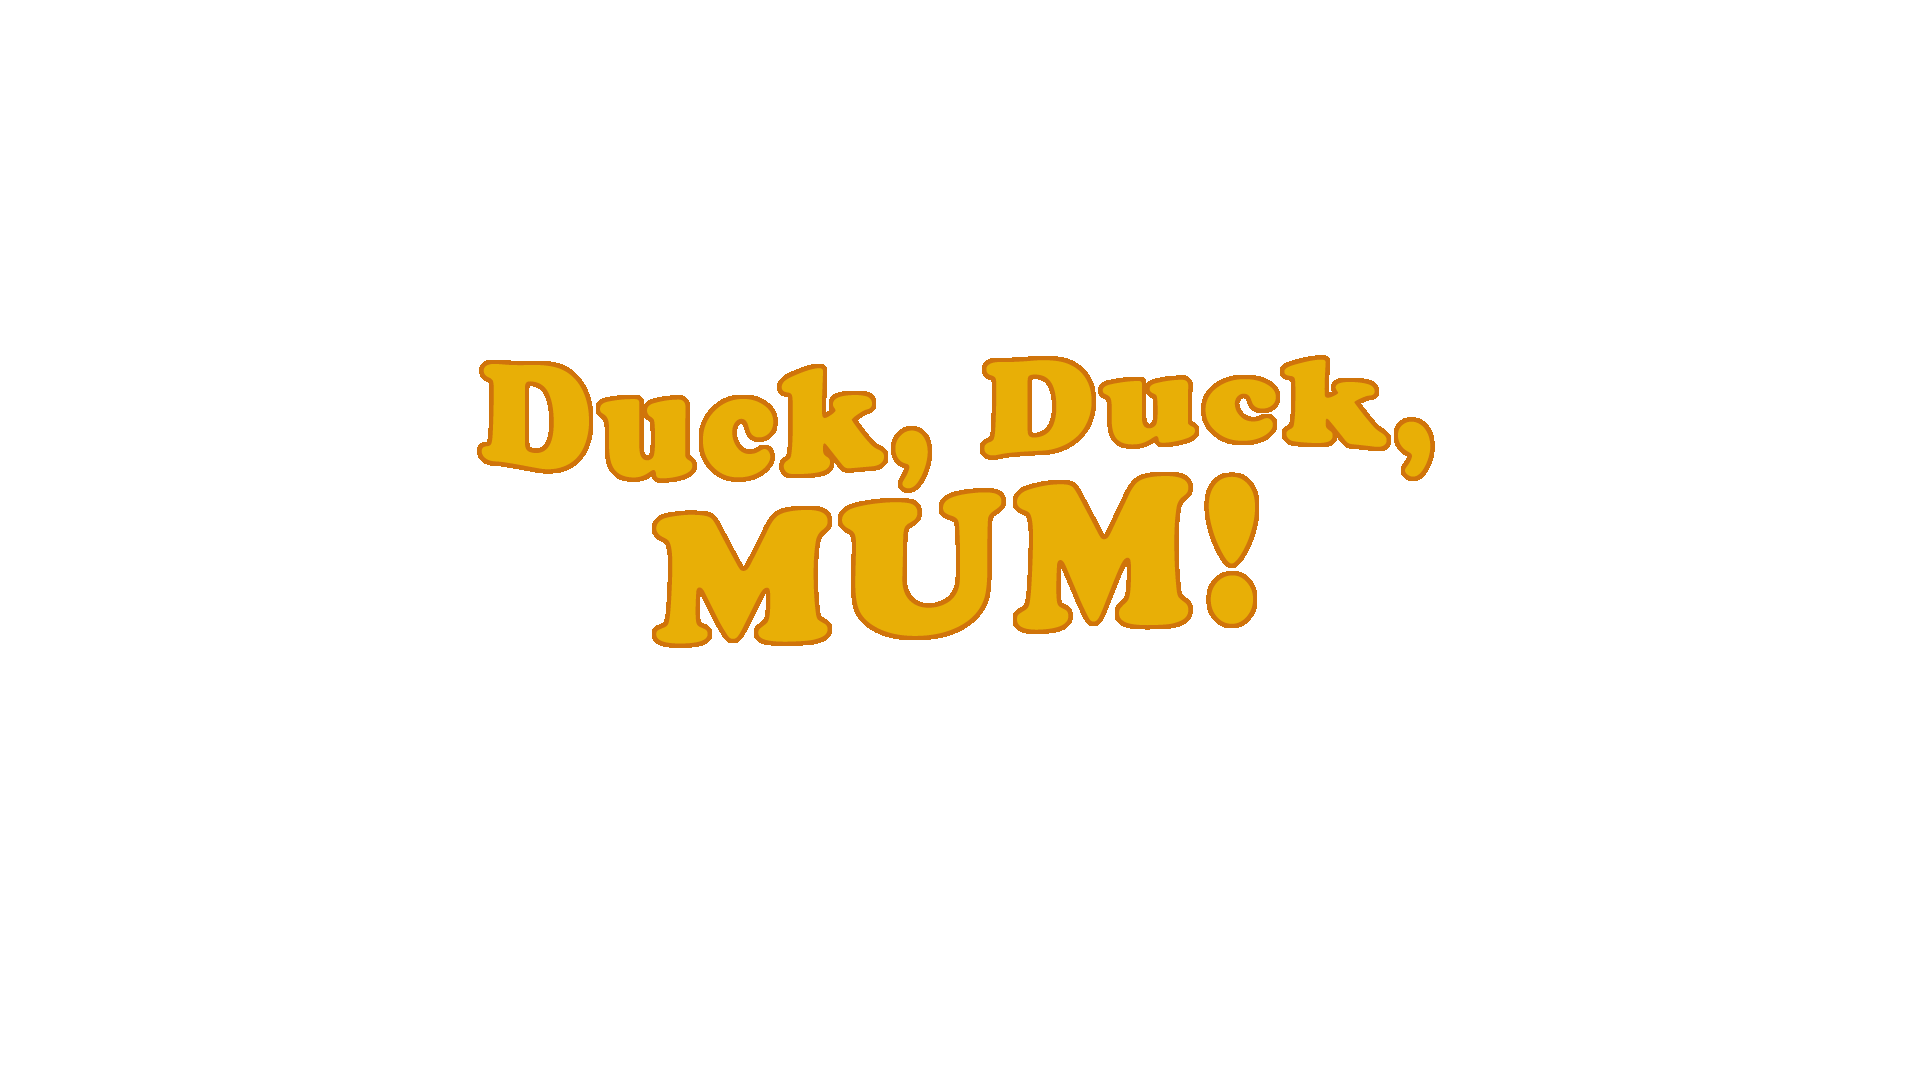 Duck, Duck, Mum!